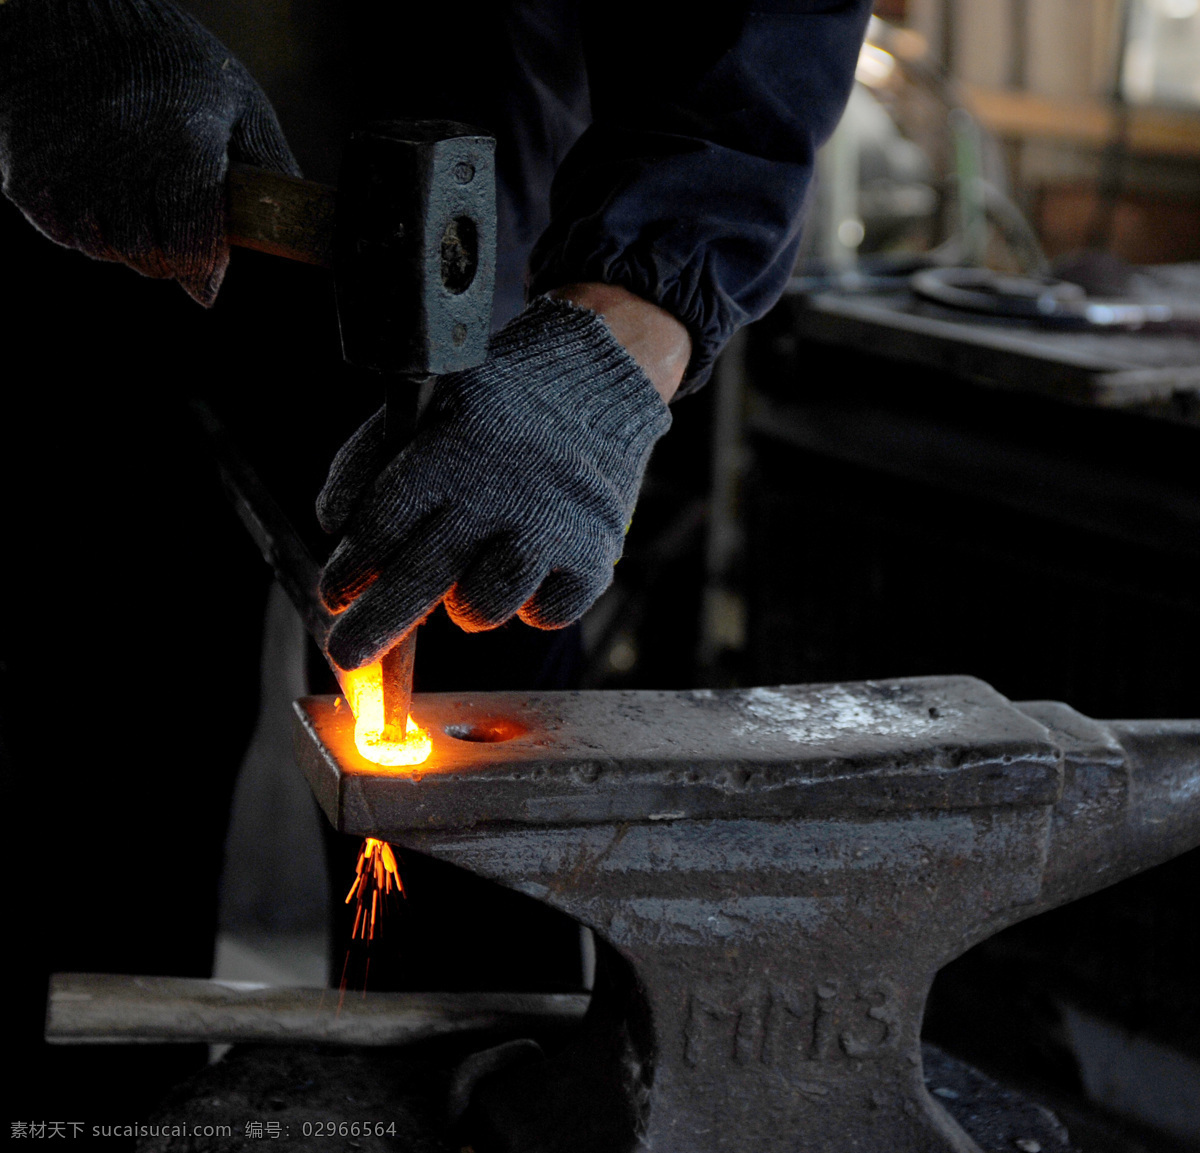 进行加工的铁 铸铁 打铁 铁匠 烧铁 炼铁 其他类别 生活百科 黑色